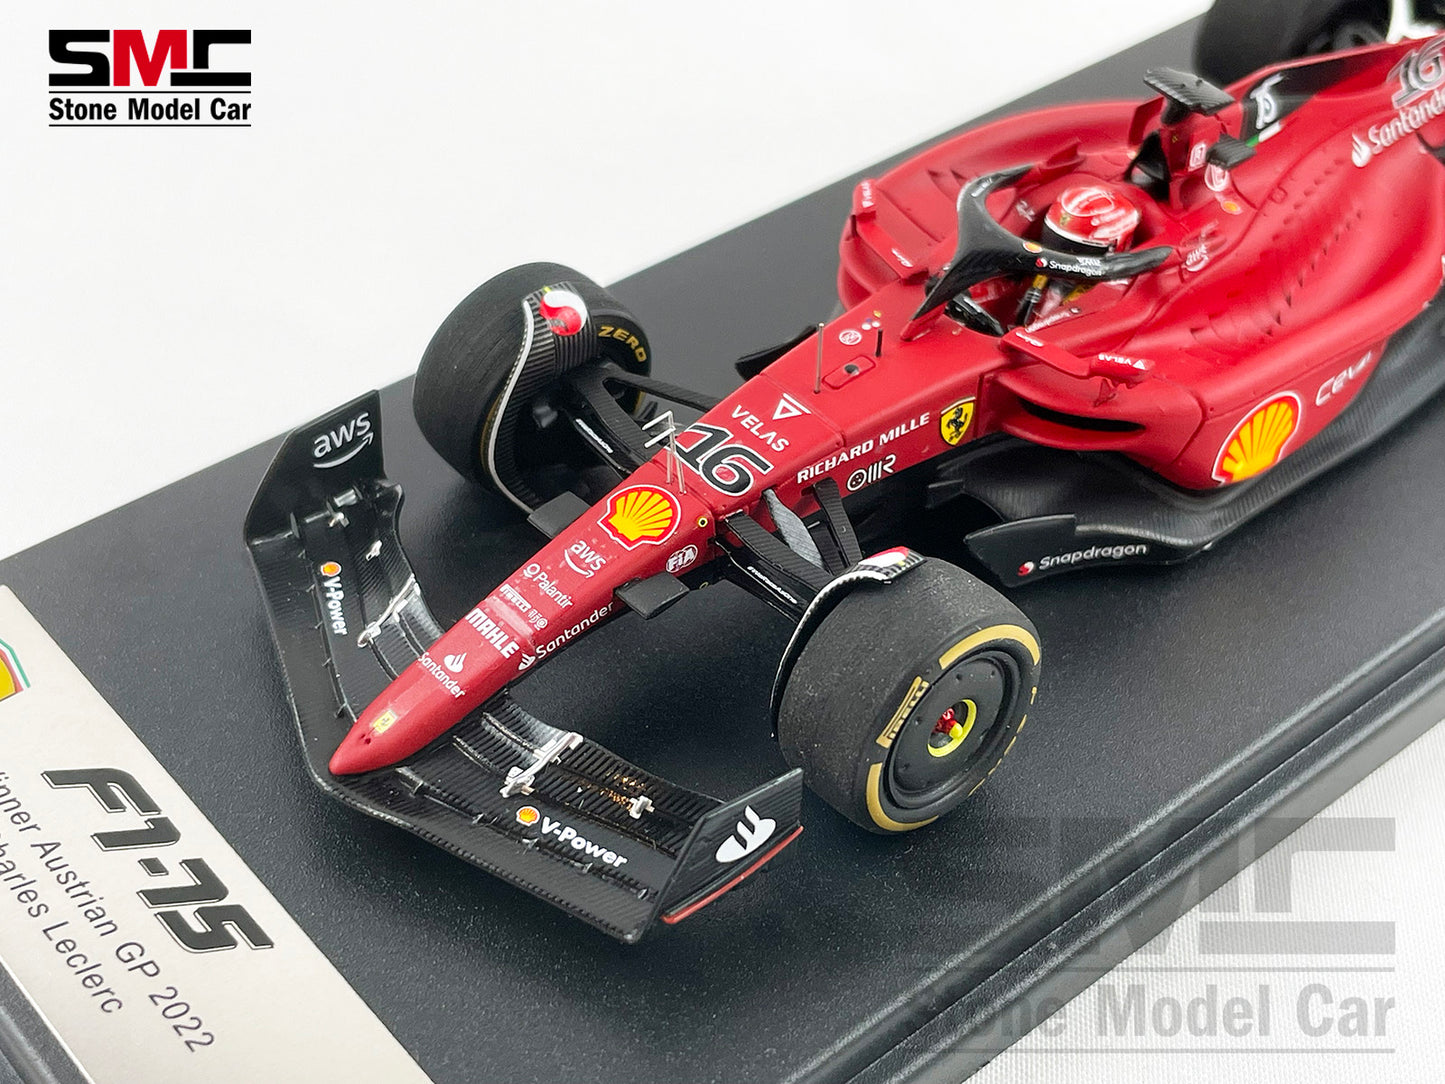 Ferrari F1 F1-75 #16 Charles Leclerc Austrian GP Winner 2022 1:43 Looksmart